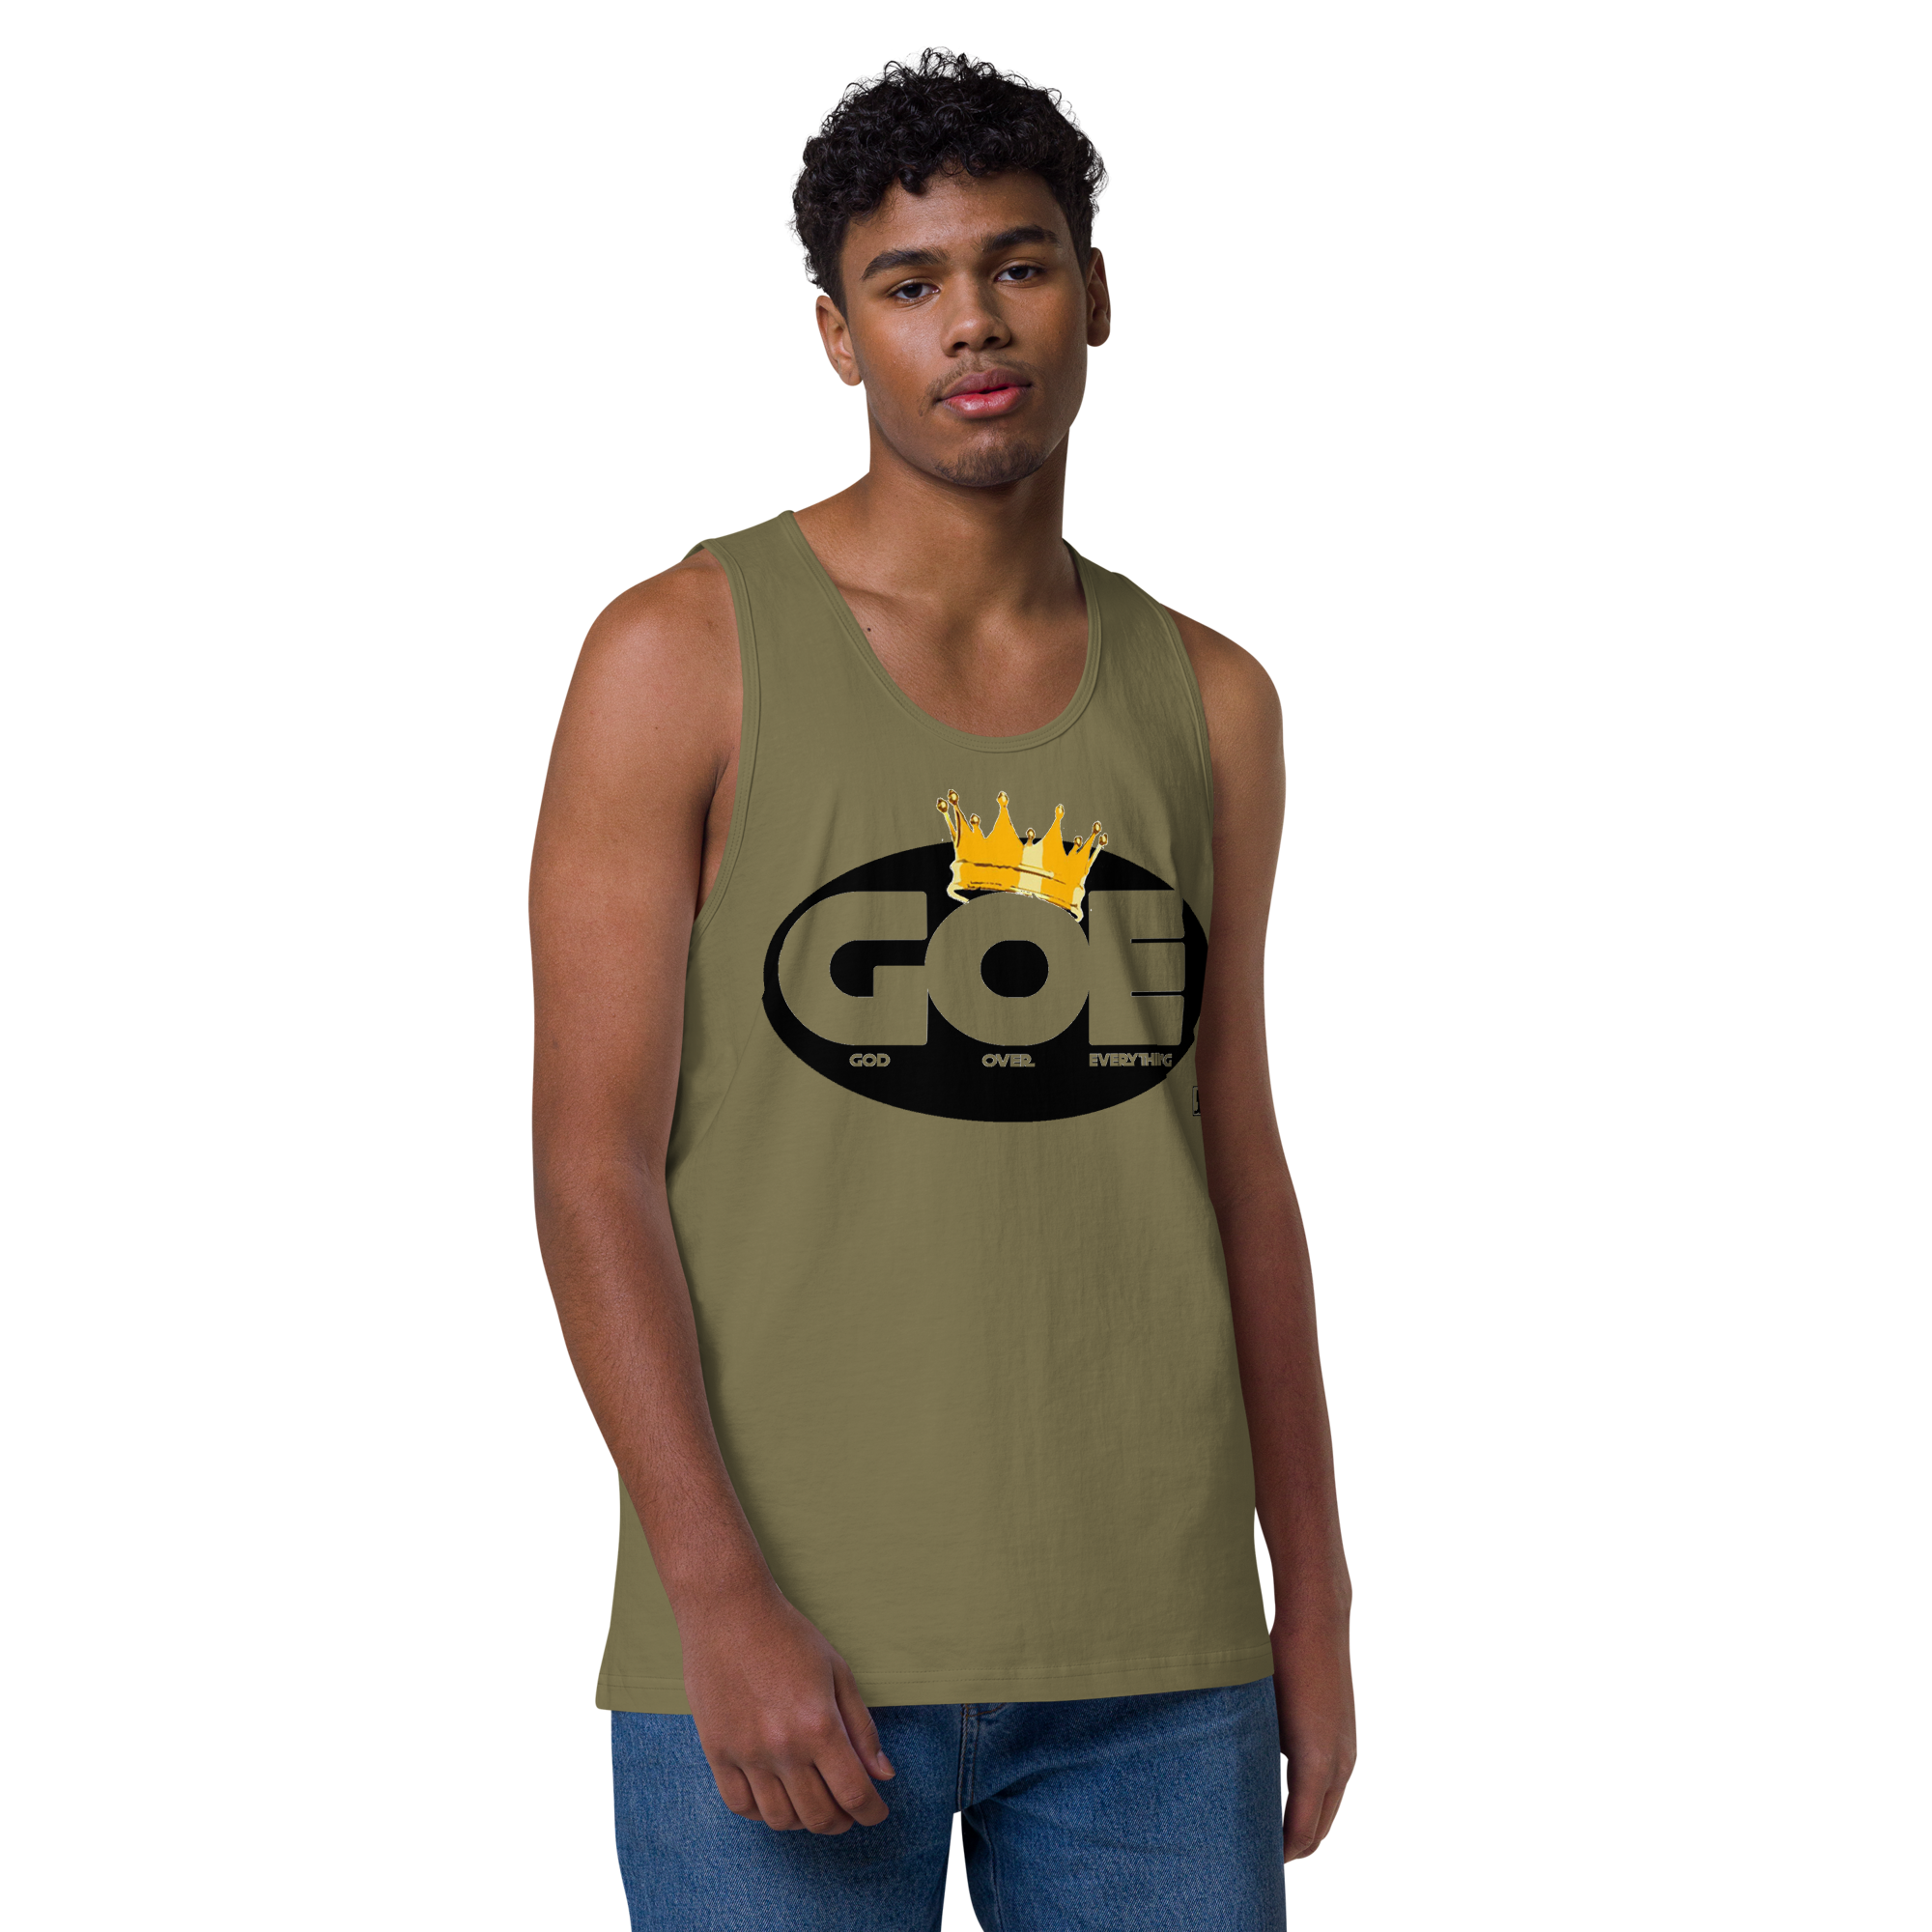 (G.O.E) God Over Everything Design Men’s Premium Tank Top